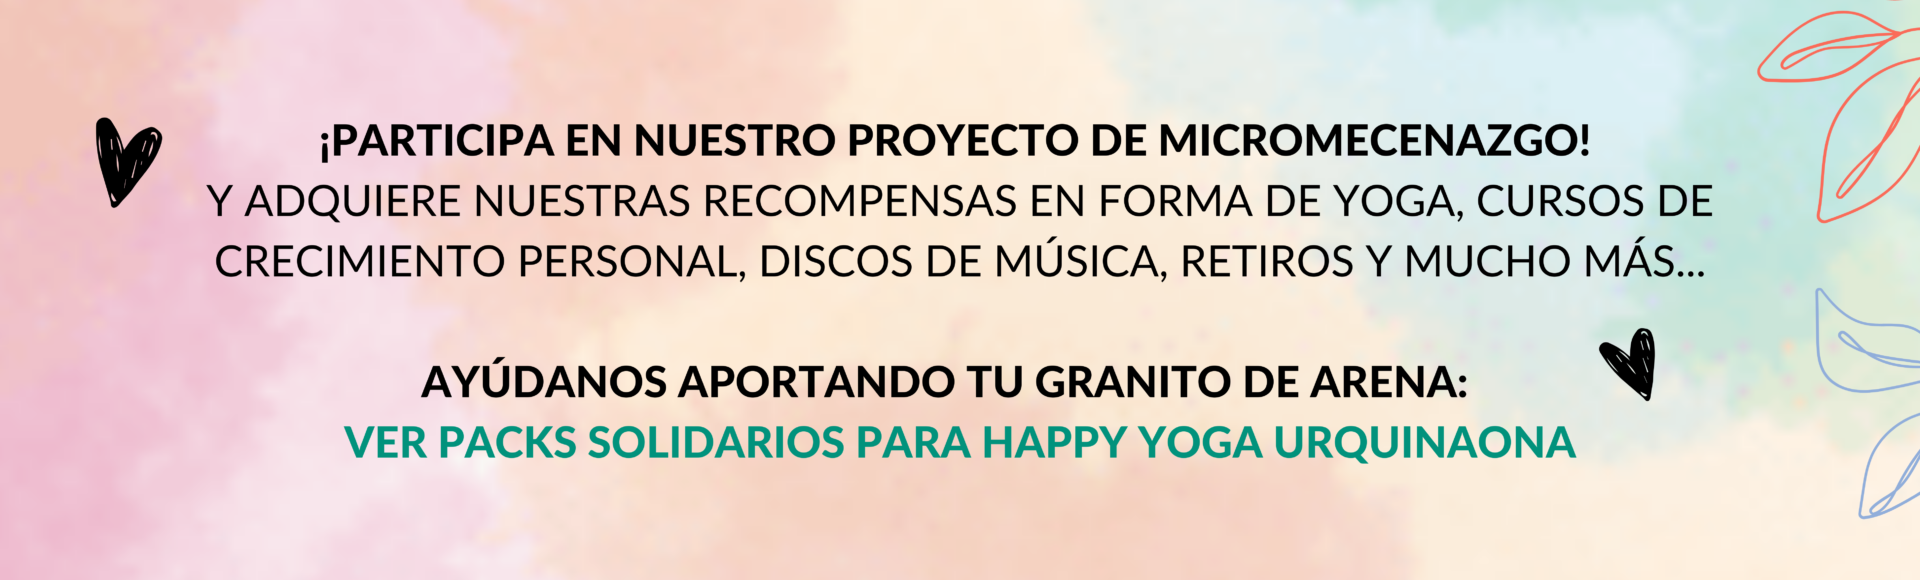 packs solidarios happy yoga urquinaona